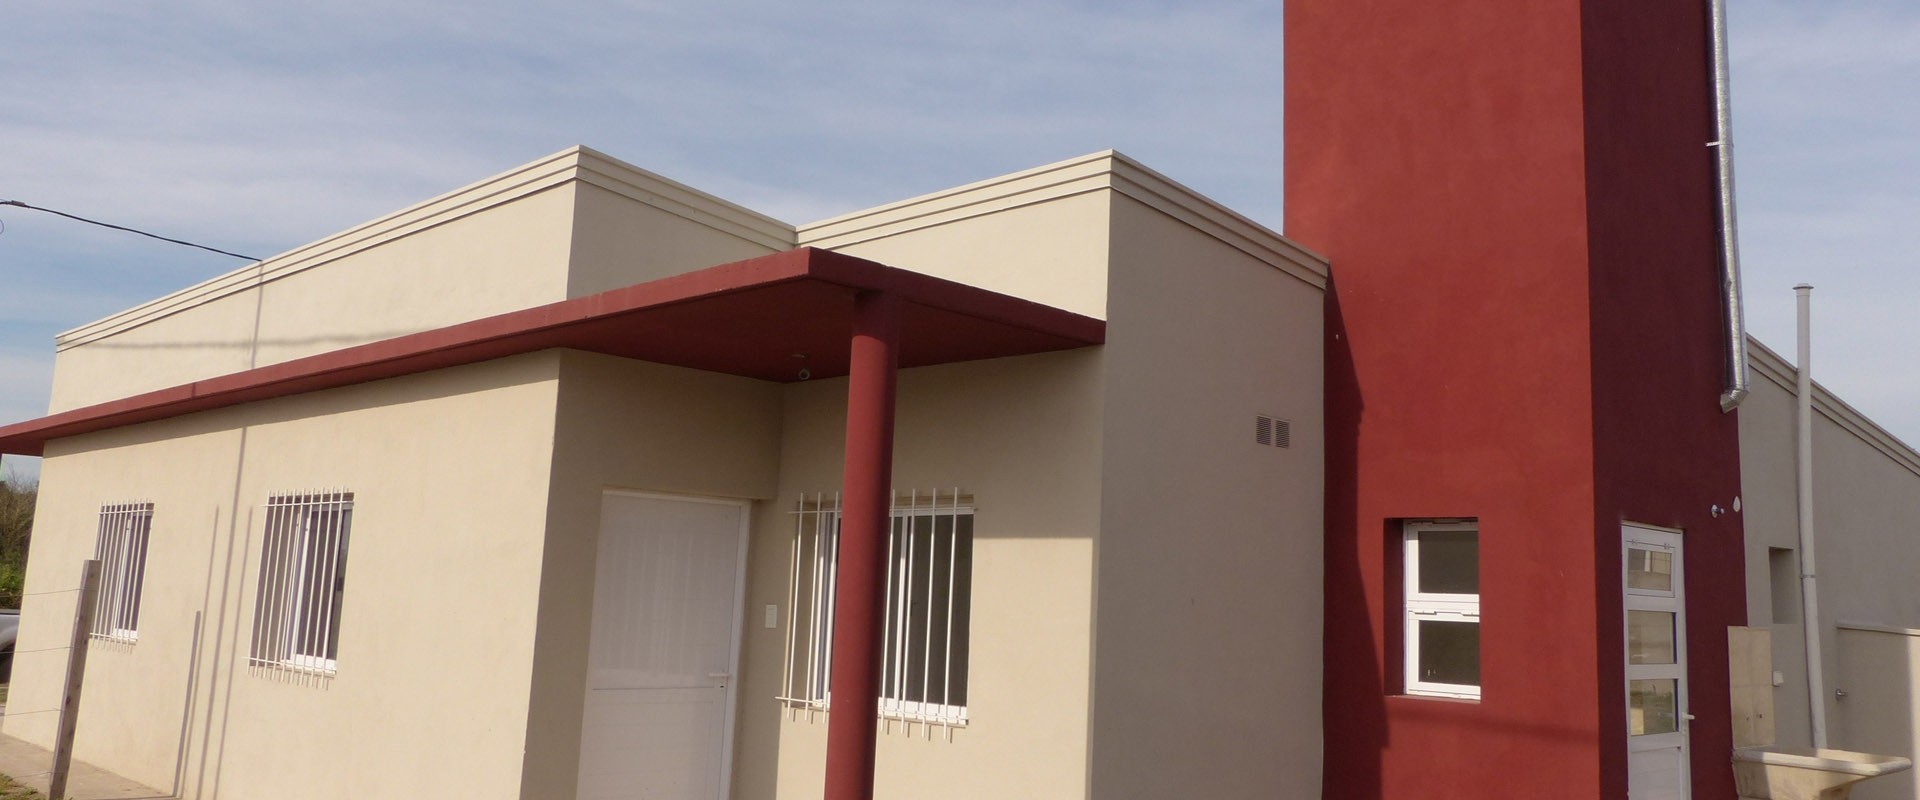 El IAPV sorteará 12 viviendas que tiene en ejecución en la localidad de Cerrito